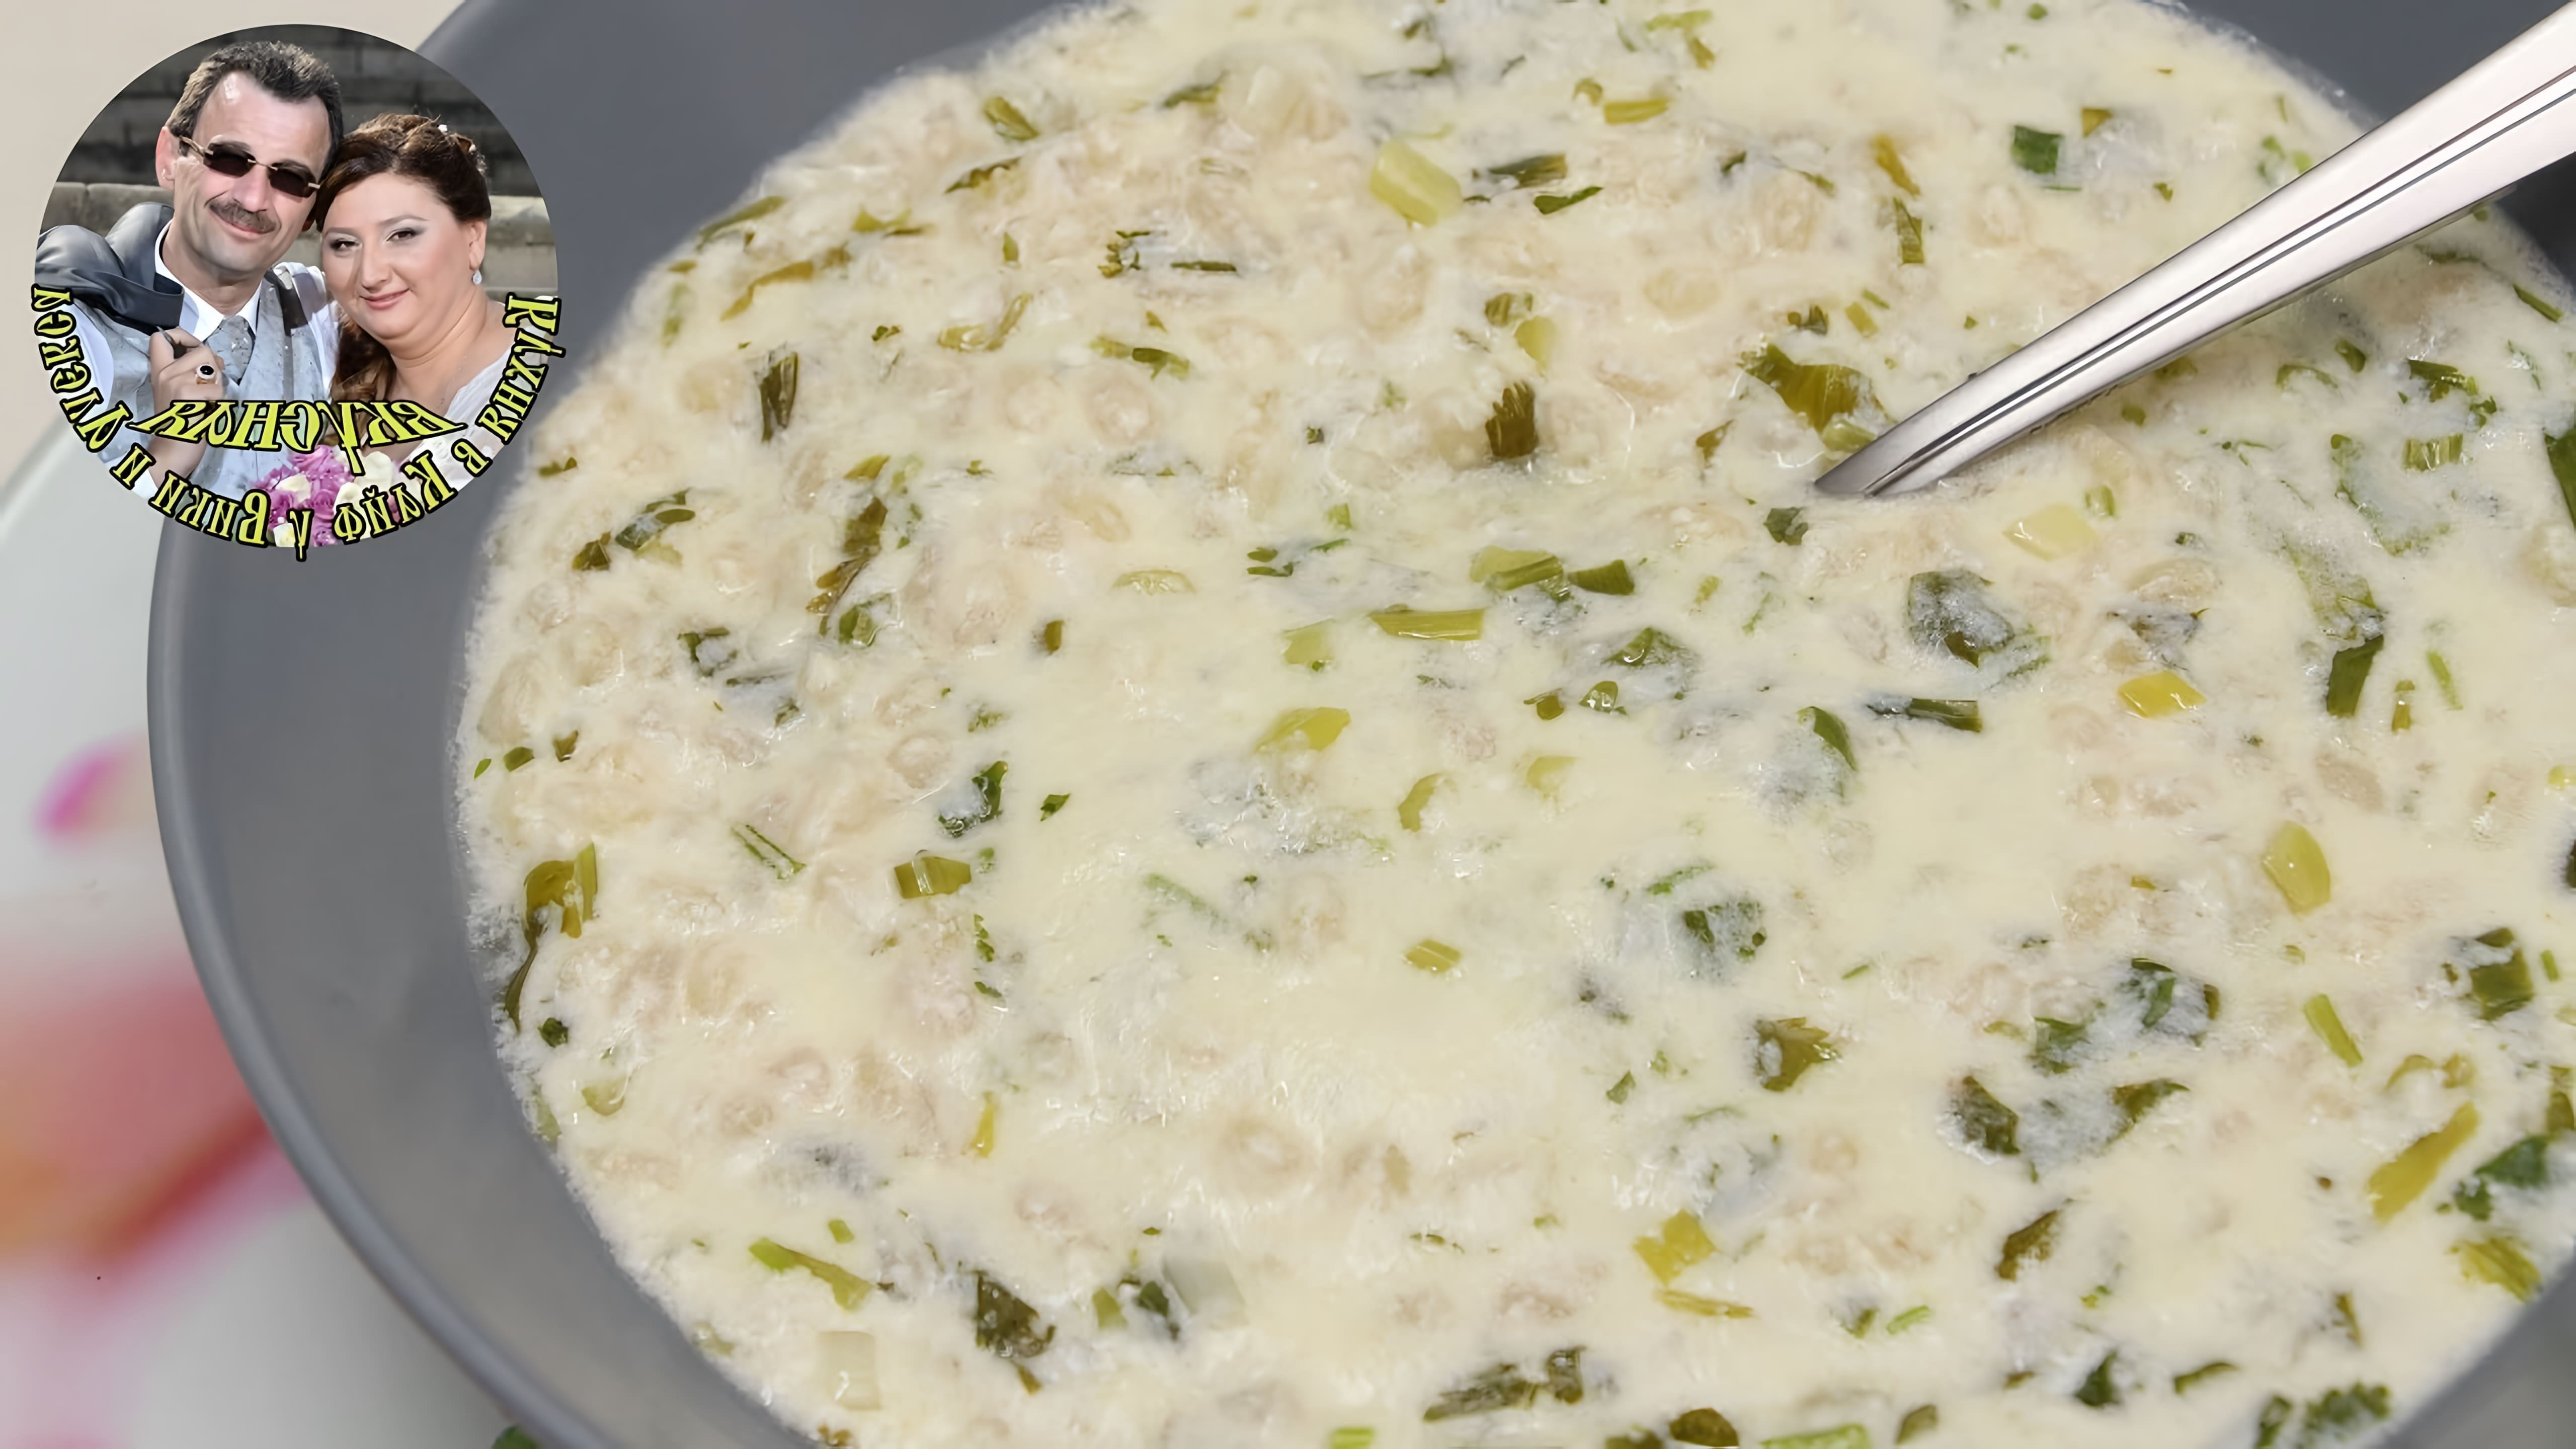 В этом видео демонстрируется рецепт армянского кисломолочного супа "Спас"